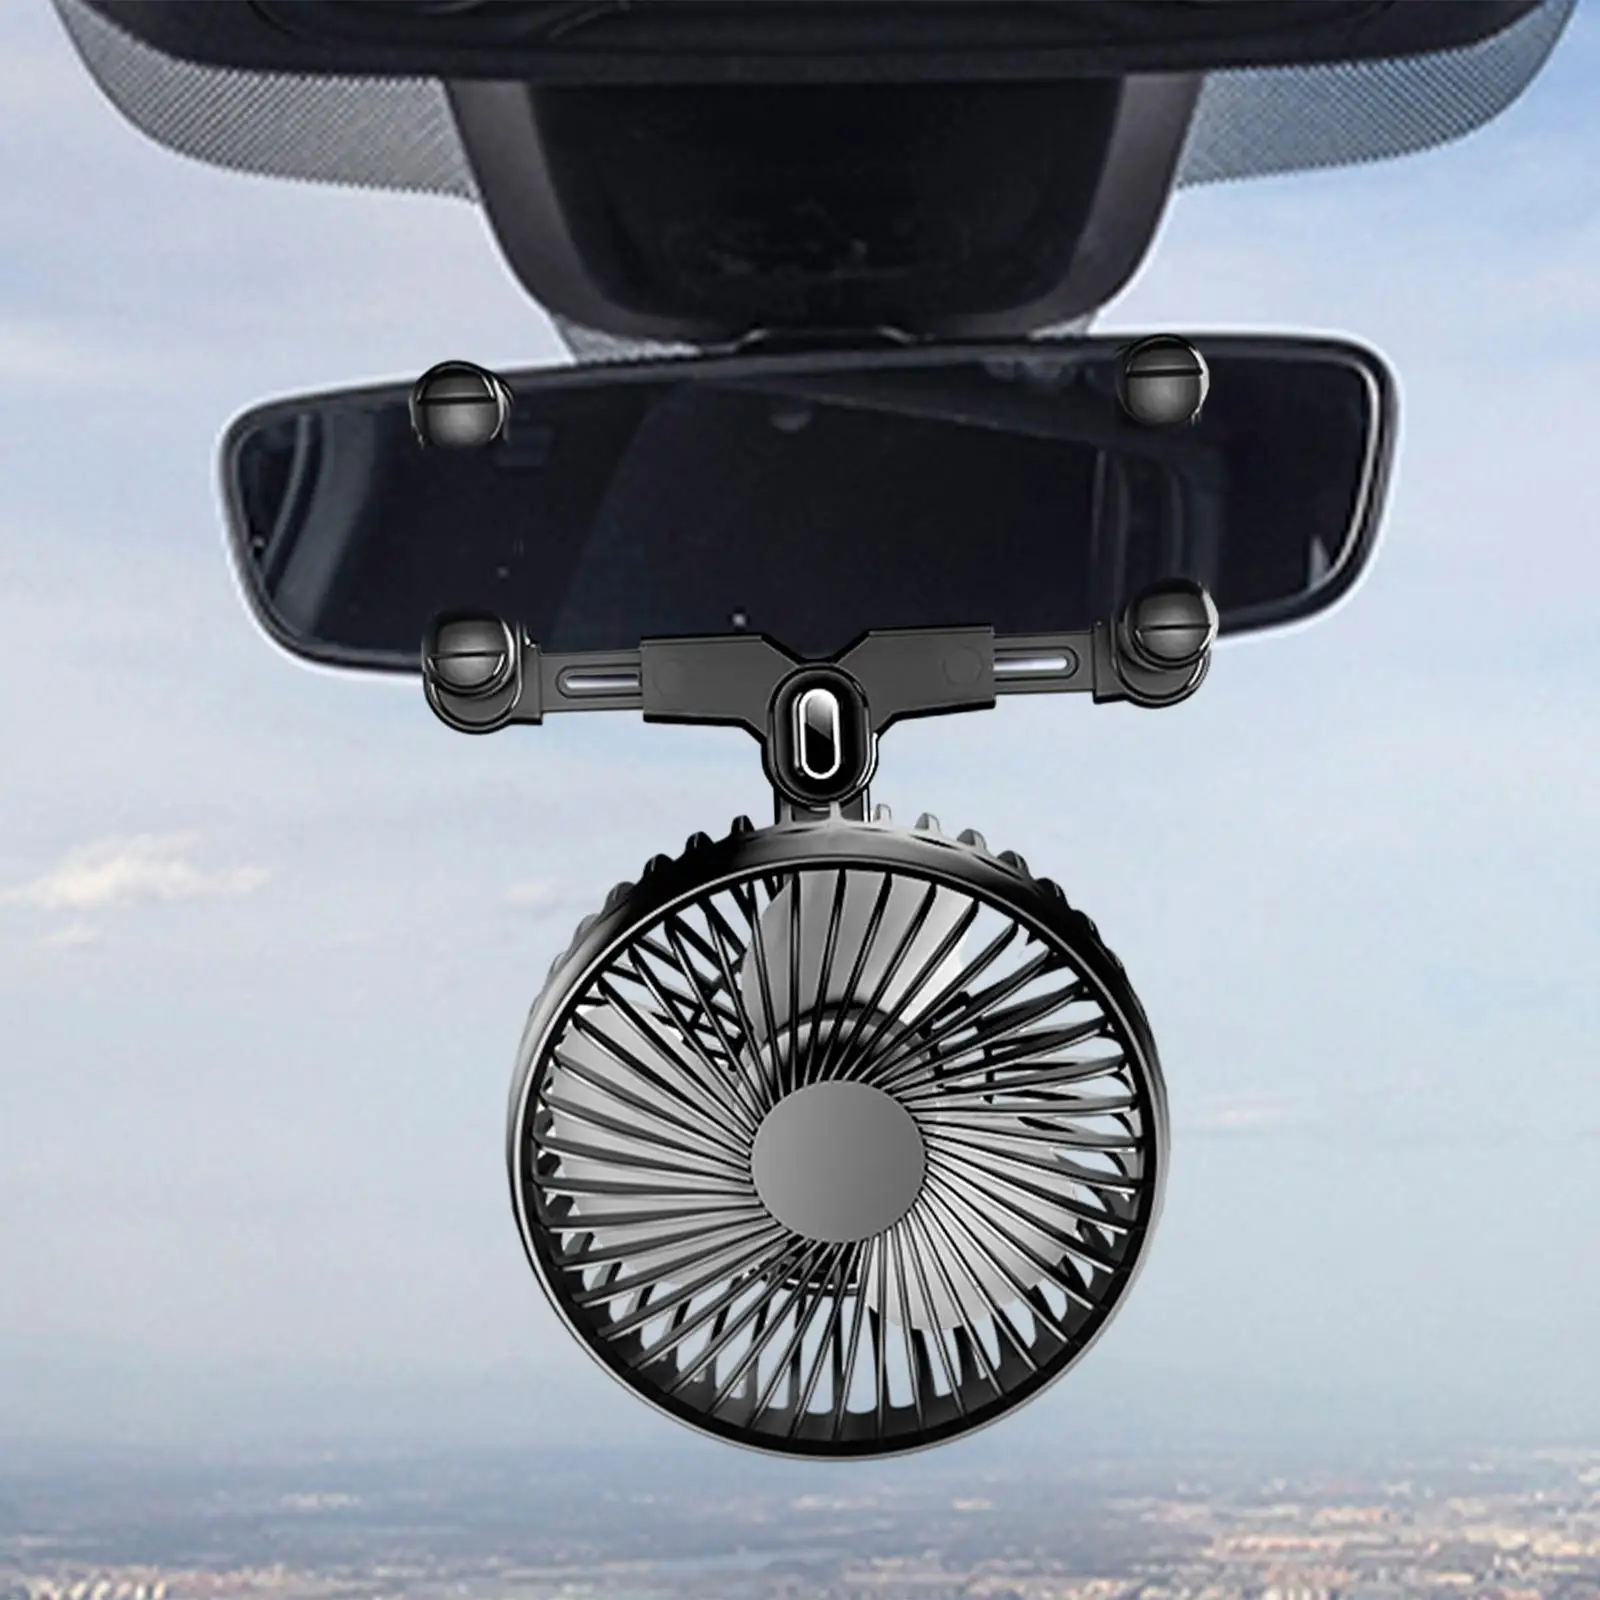 Car Fan Auto Cooling Fan Vehicle Portable Low Noise Devices Strong Wind Fan